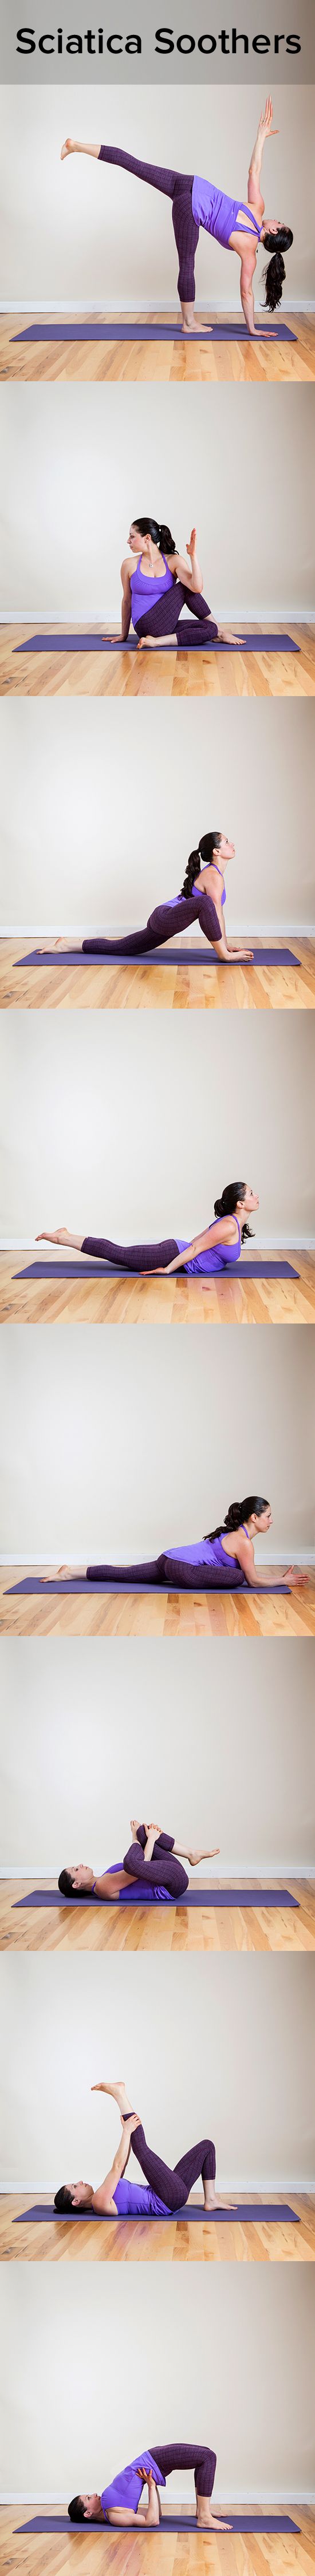 sciatic nerve yoga exercises